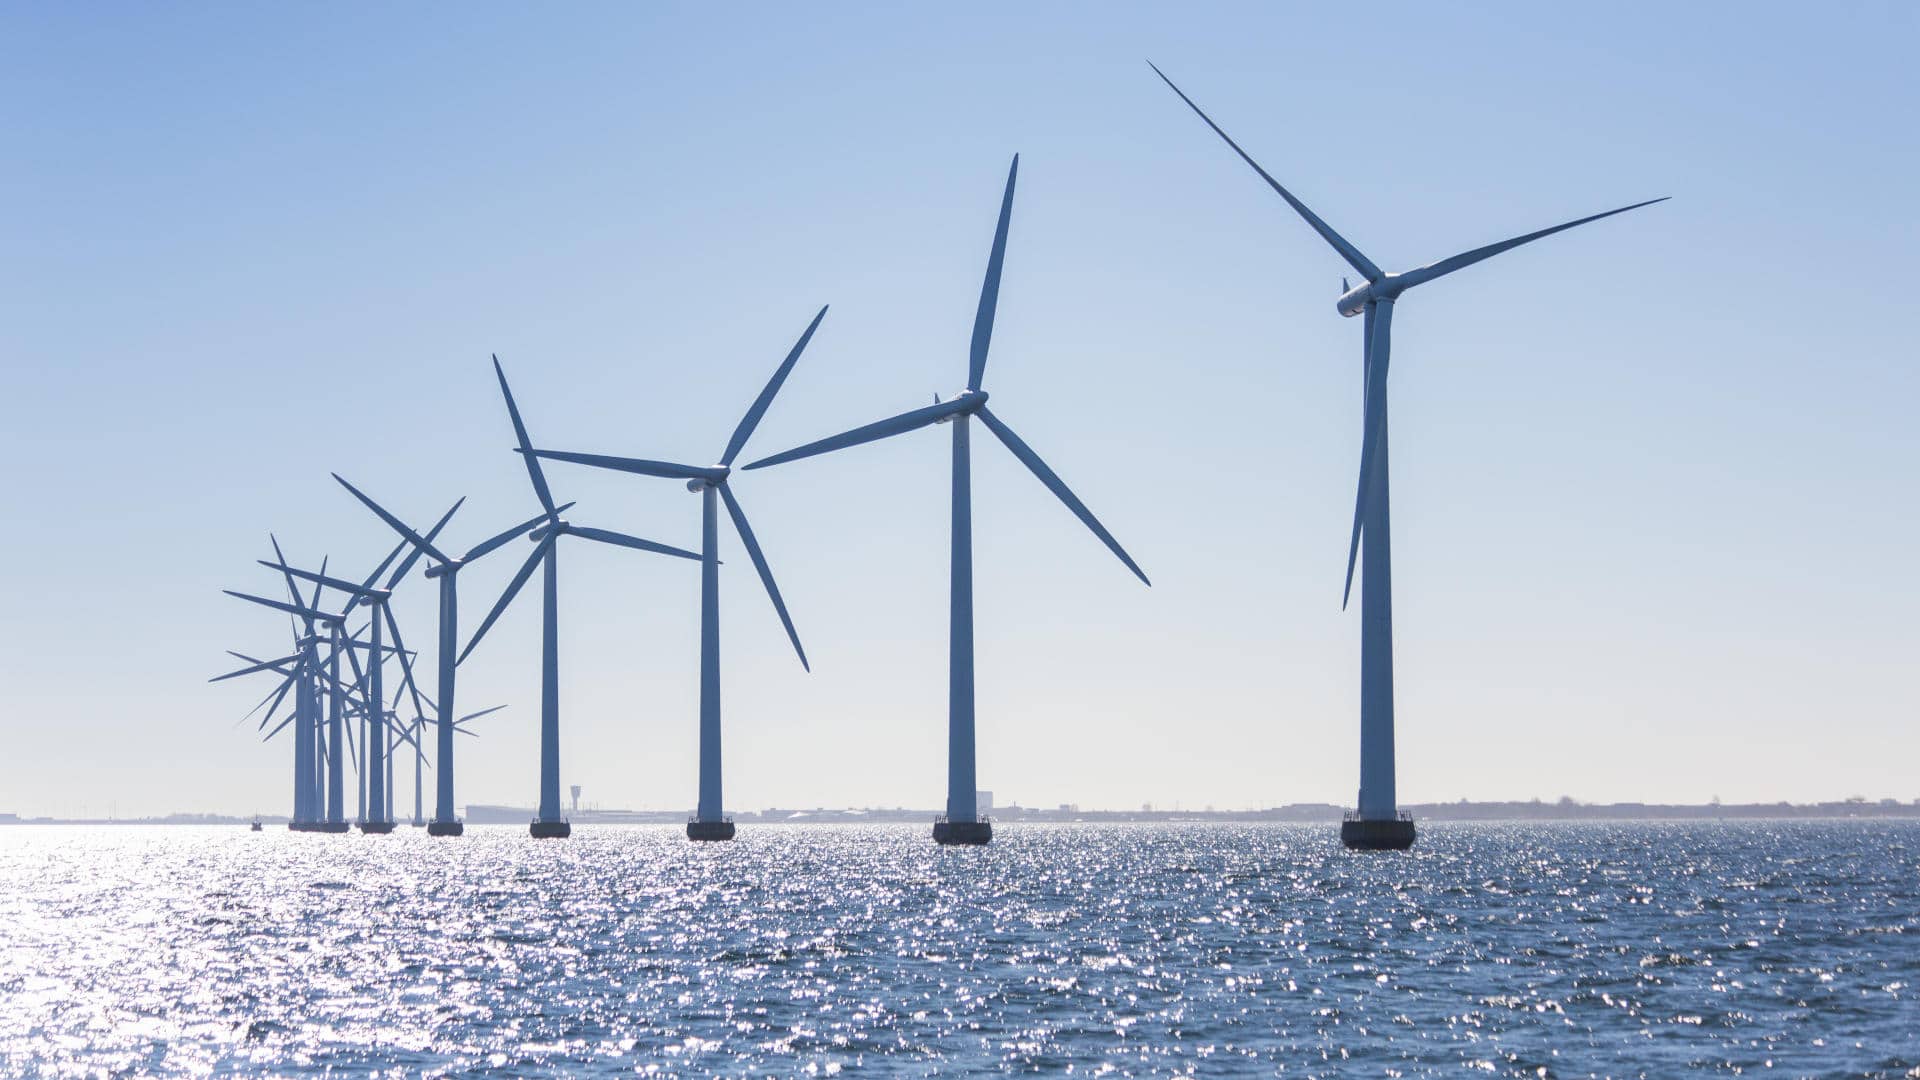 The Middelgrunden offshore wind farm near Copenhagen, Denmark.